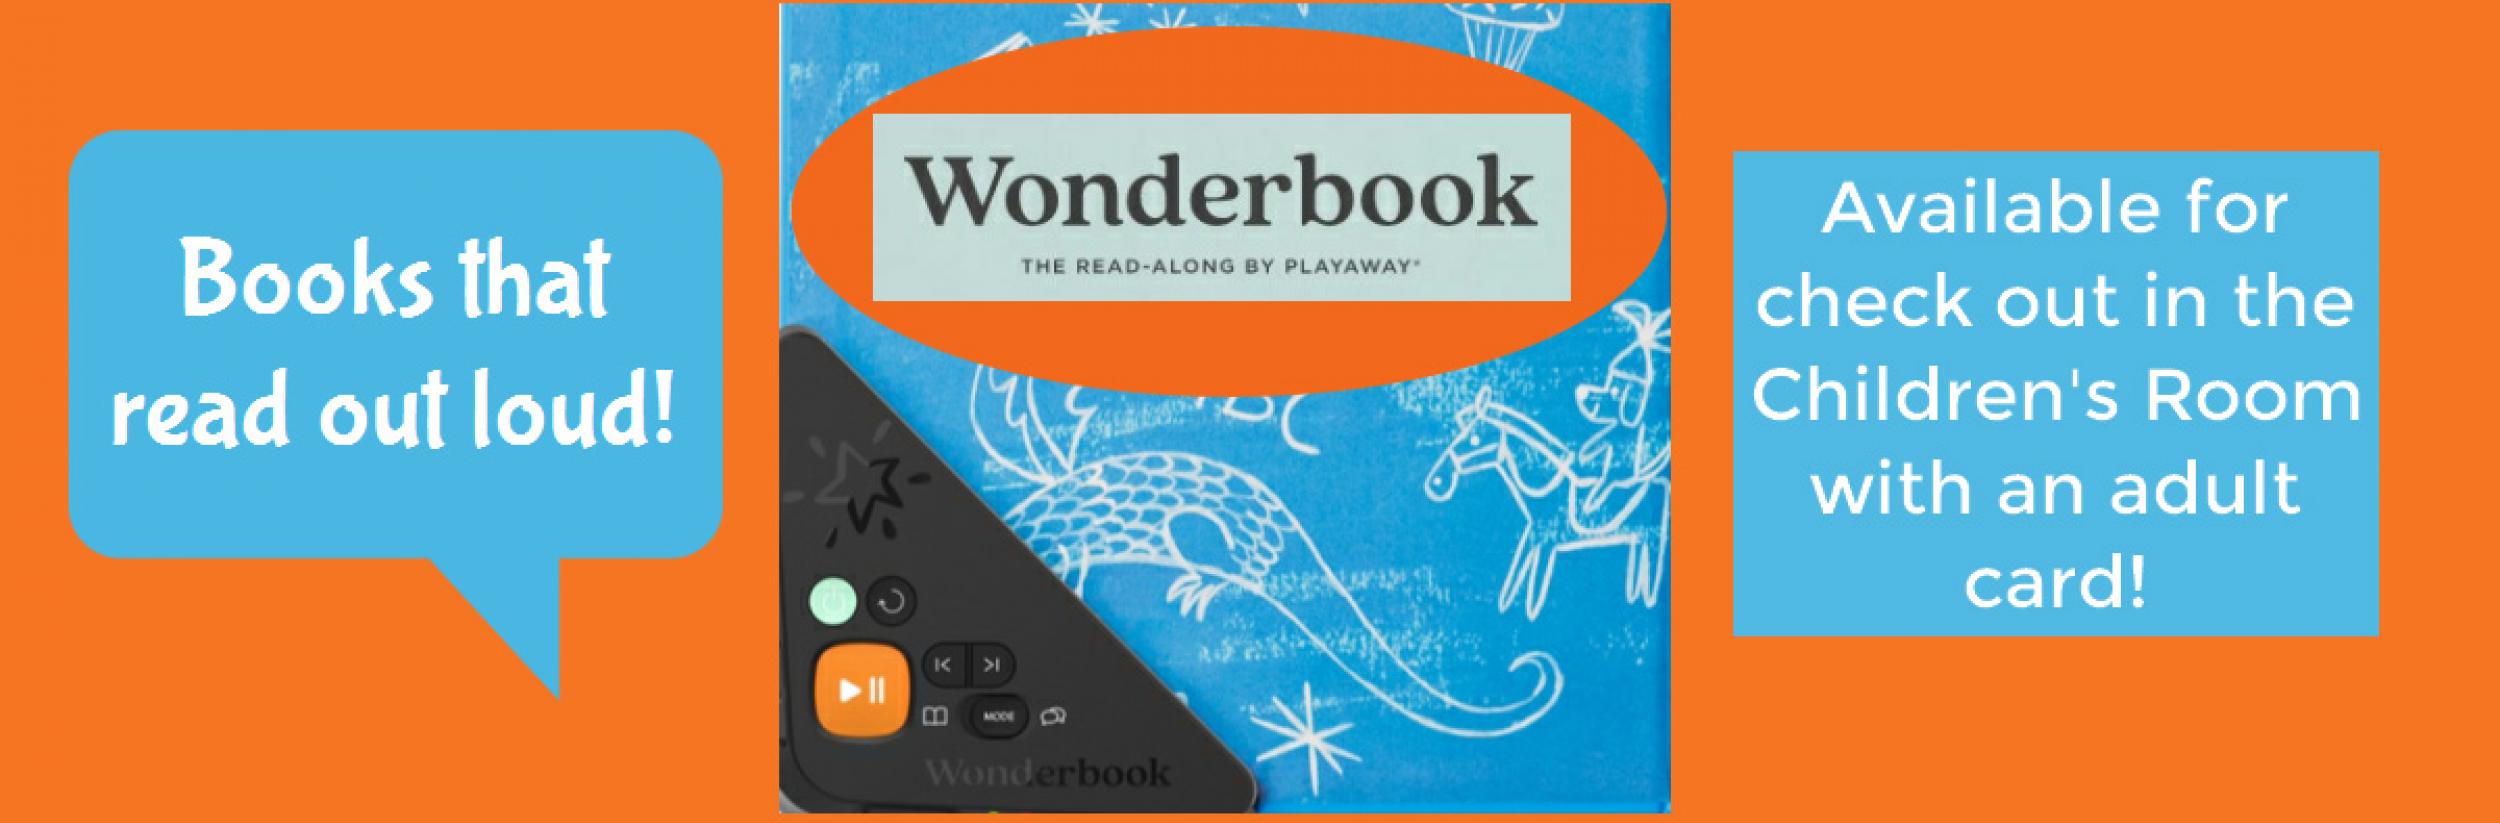 Image for "Wonderbooks slide"